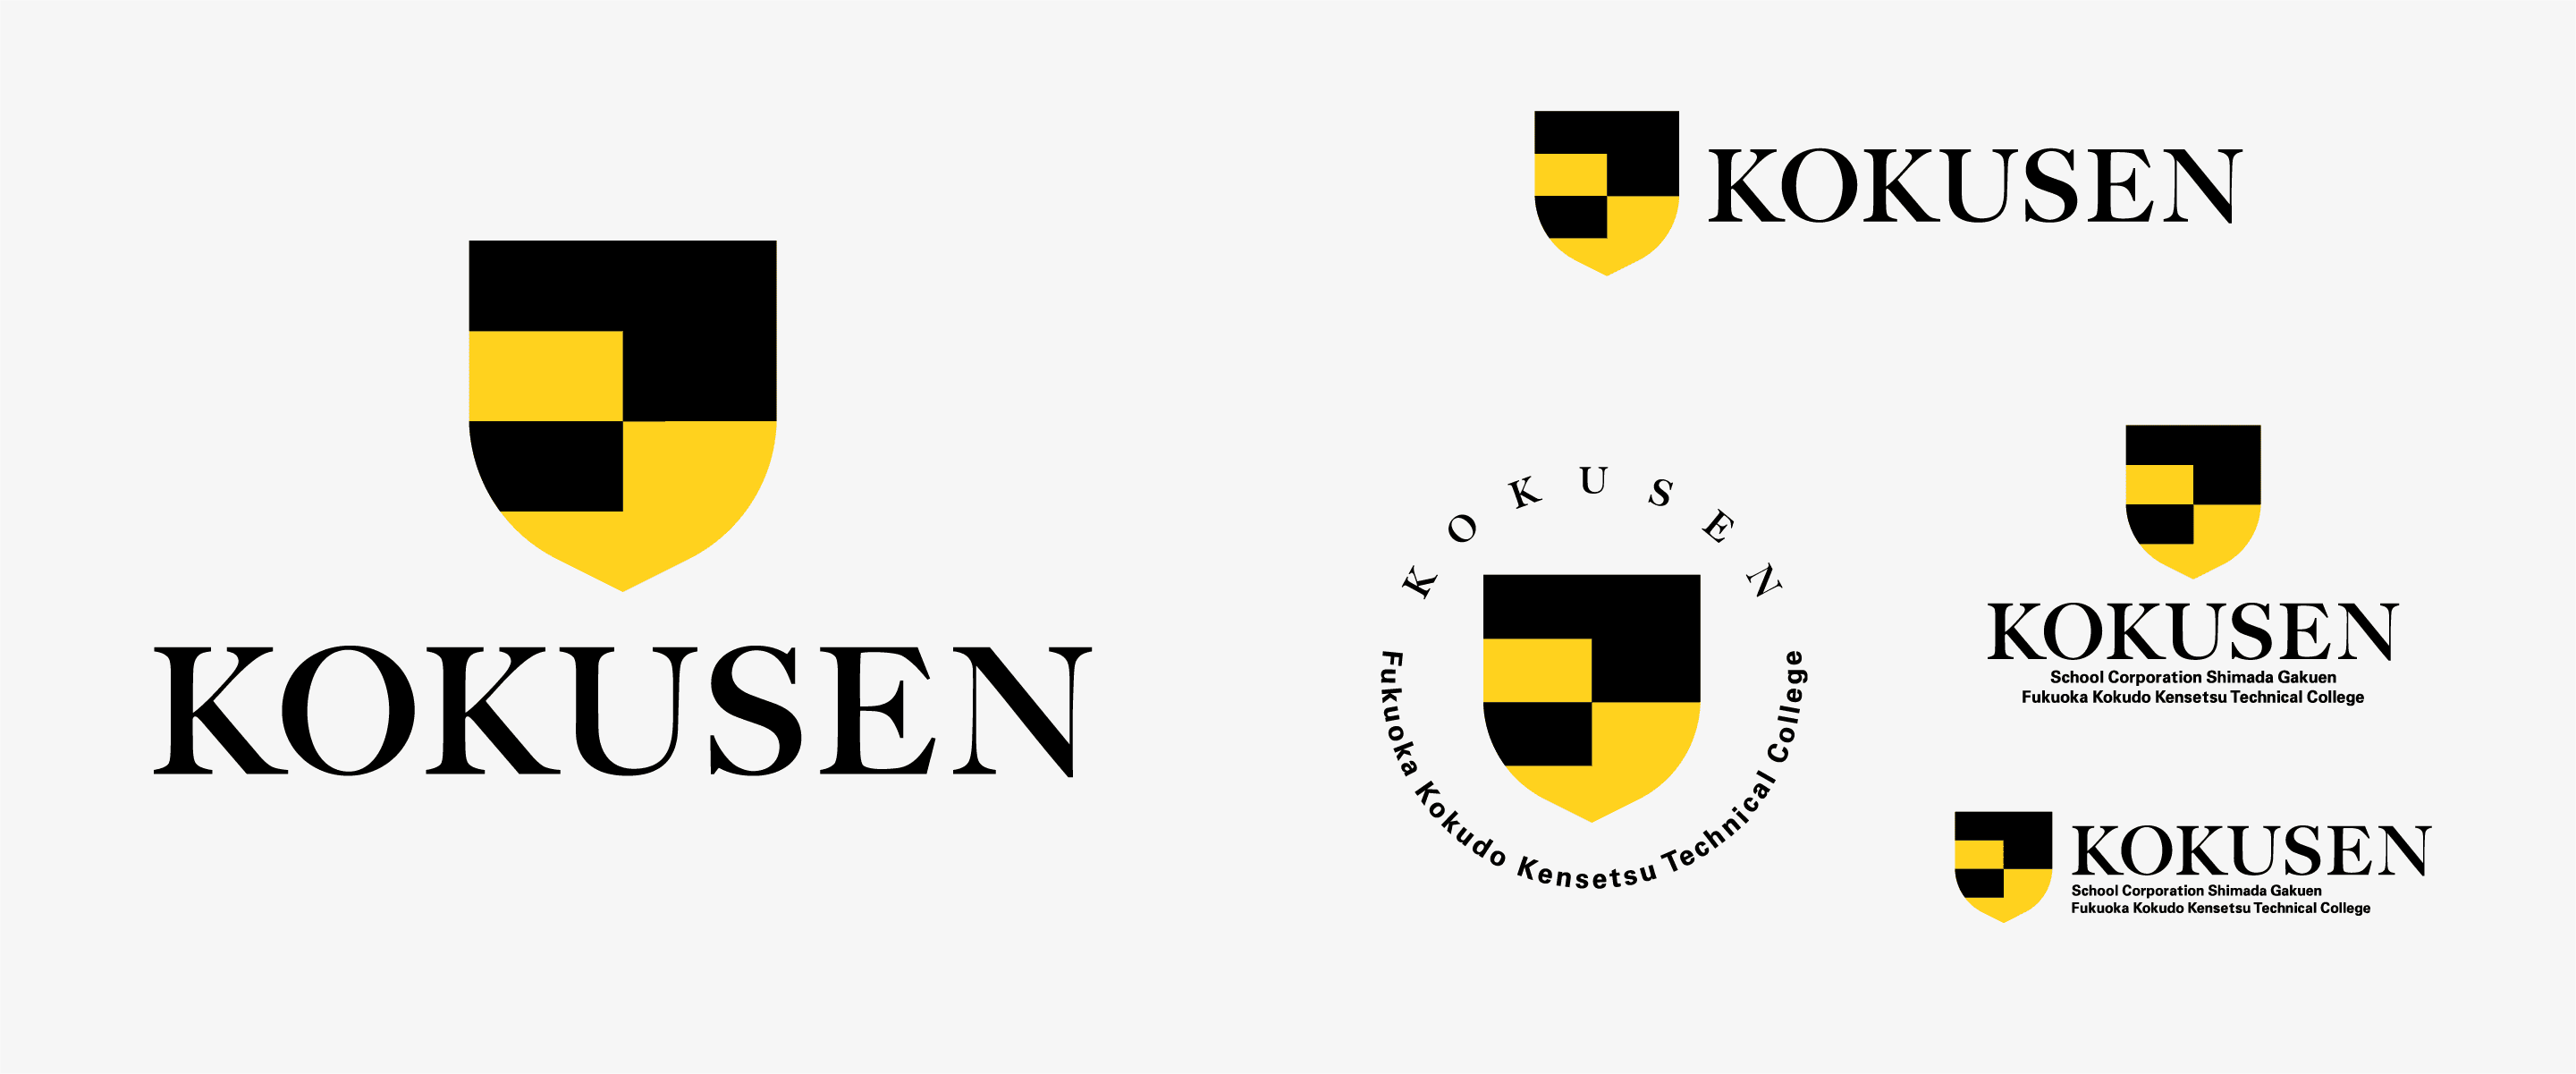 KOKUSENのロゴについての説明